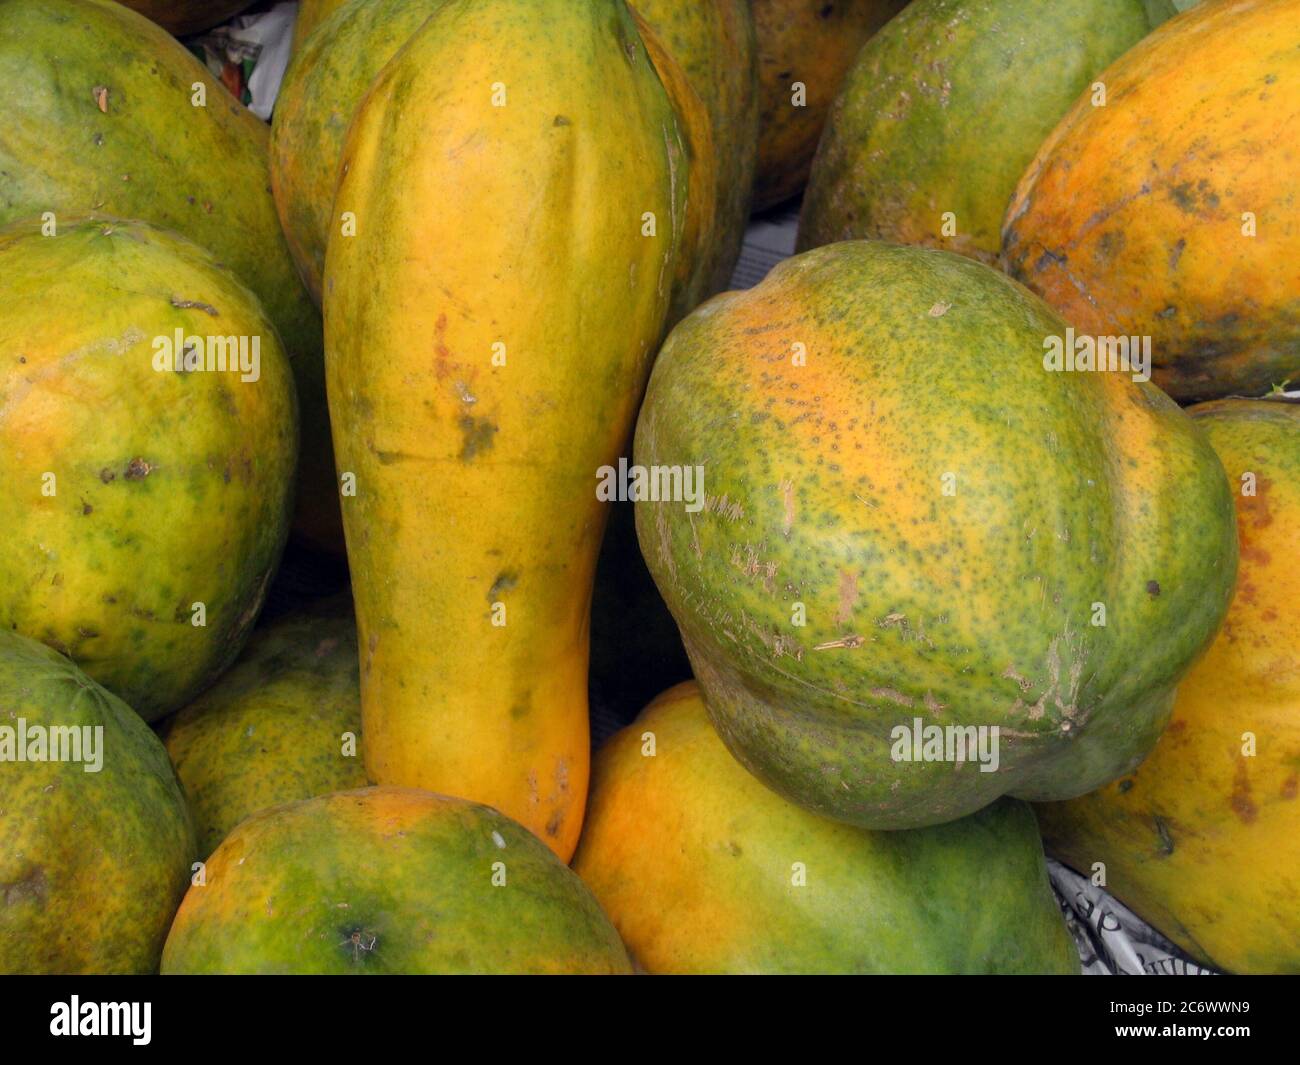 La papaye, connue localement sous le nom de Pepe, est un fruit commun au Bangladesh disponible tout au long de l'année. Bangladesh. 14 avril 2007. Banque D'Images